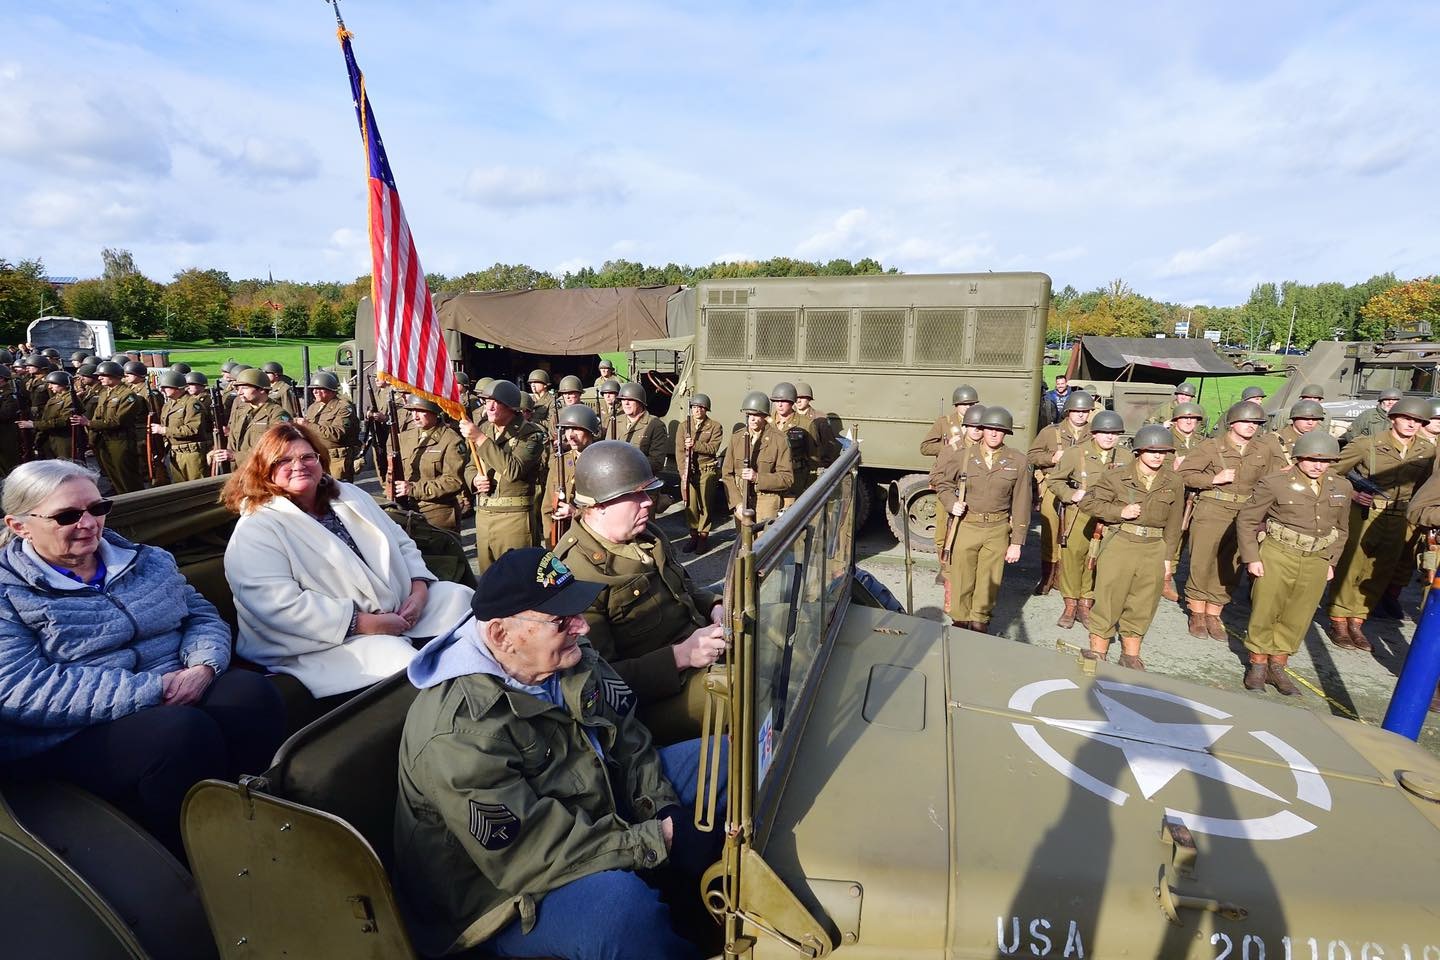 Herdenking van de bevrijding van Etten-Leur met Amerikaanse militairen en burgemeester Starmans in een jeep